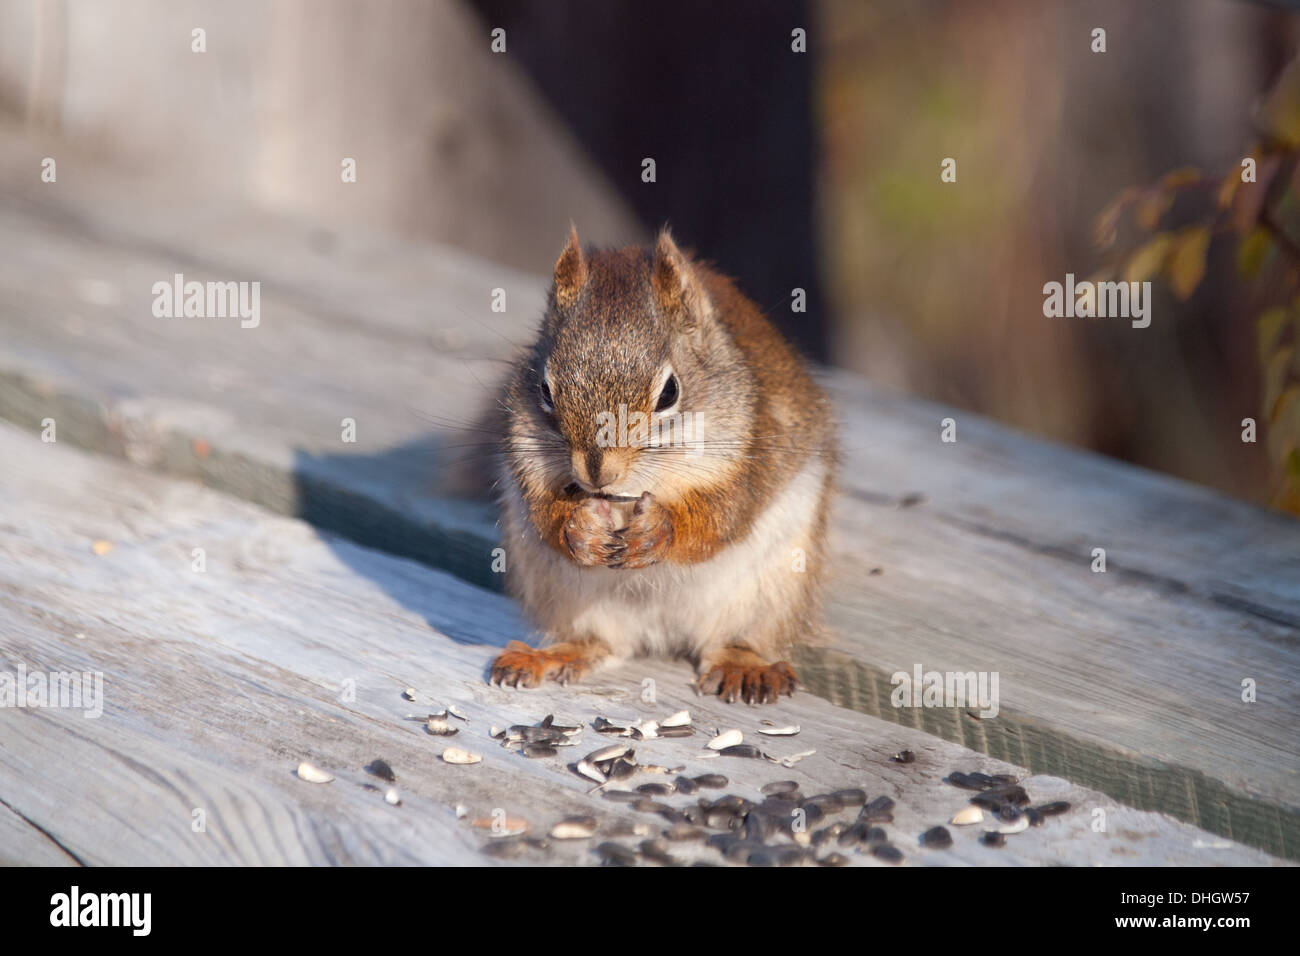 Un Americano scoiattolo rosso (Tamiasciurus hudsonicus) si alimenta di semi di girasole a Beaver Creek Area di Conservazione, Saskatchewan. Foto Stock